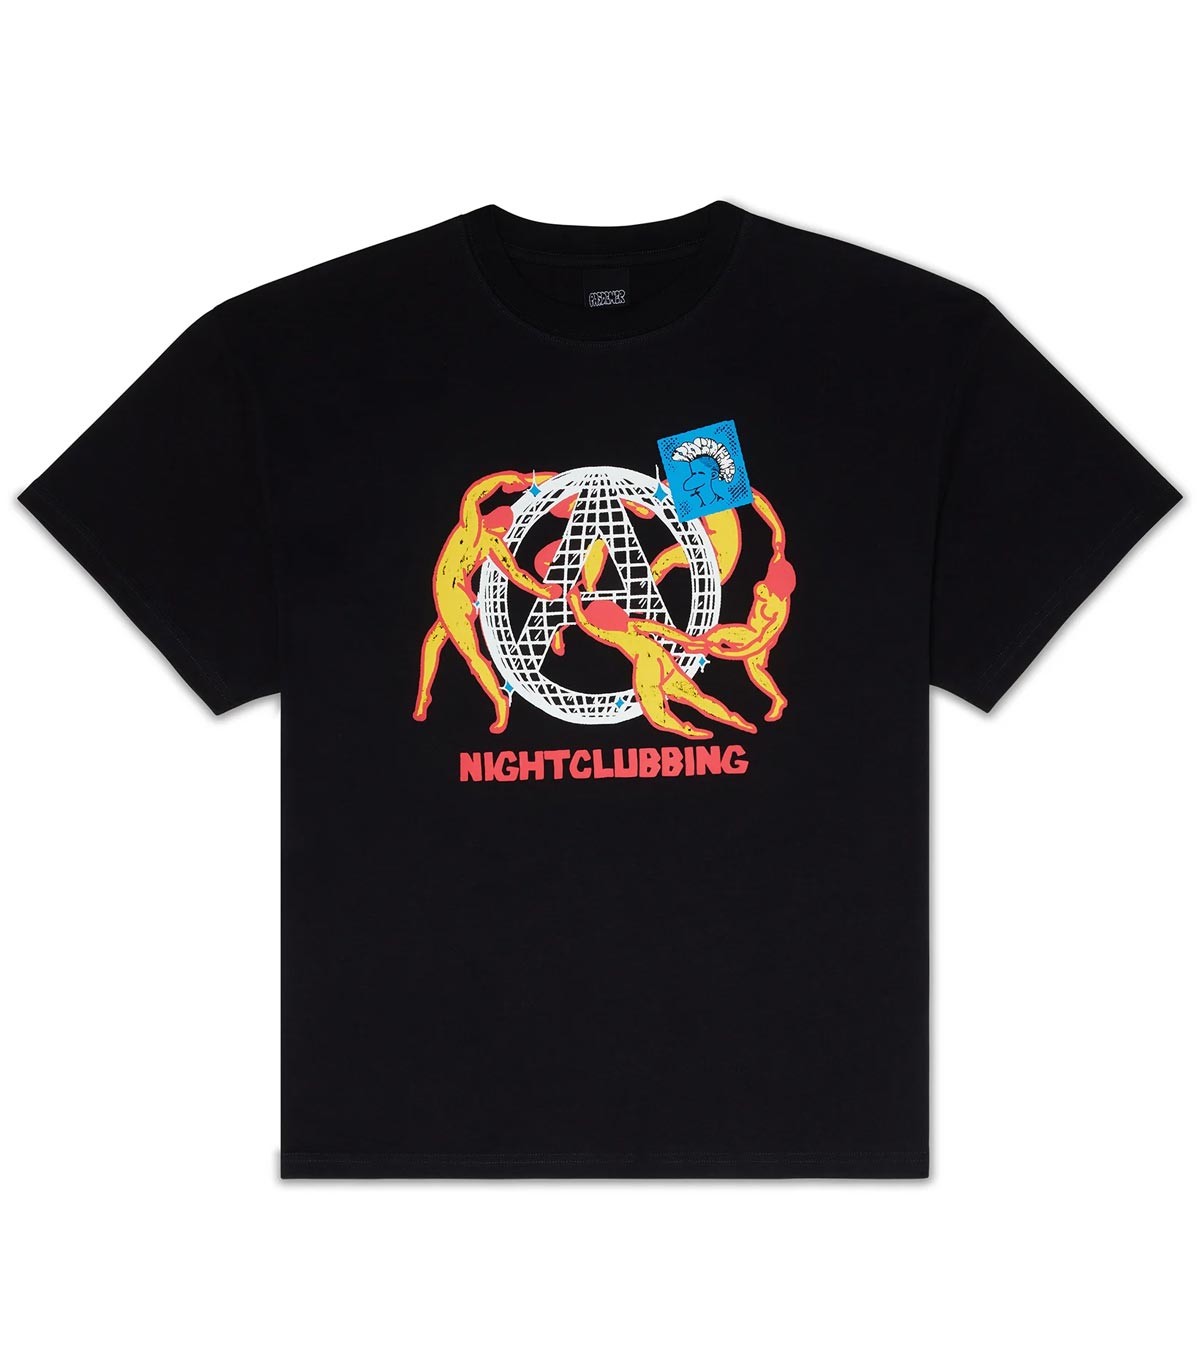 PASDEMER - Camiseta Nightclubbing - Negro